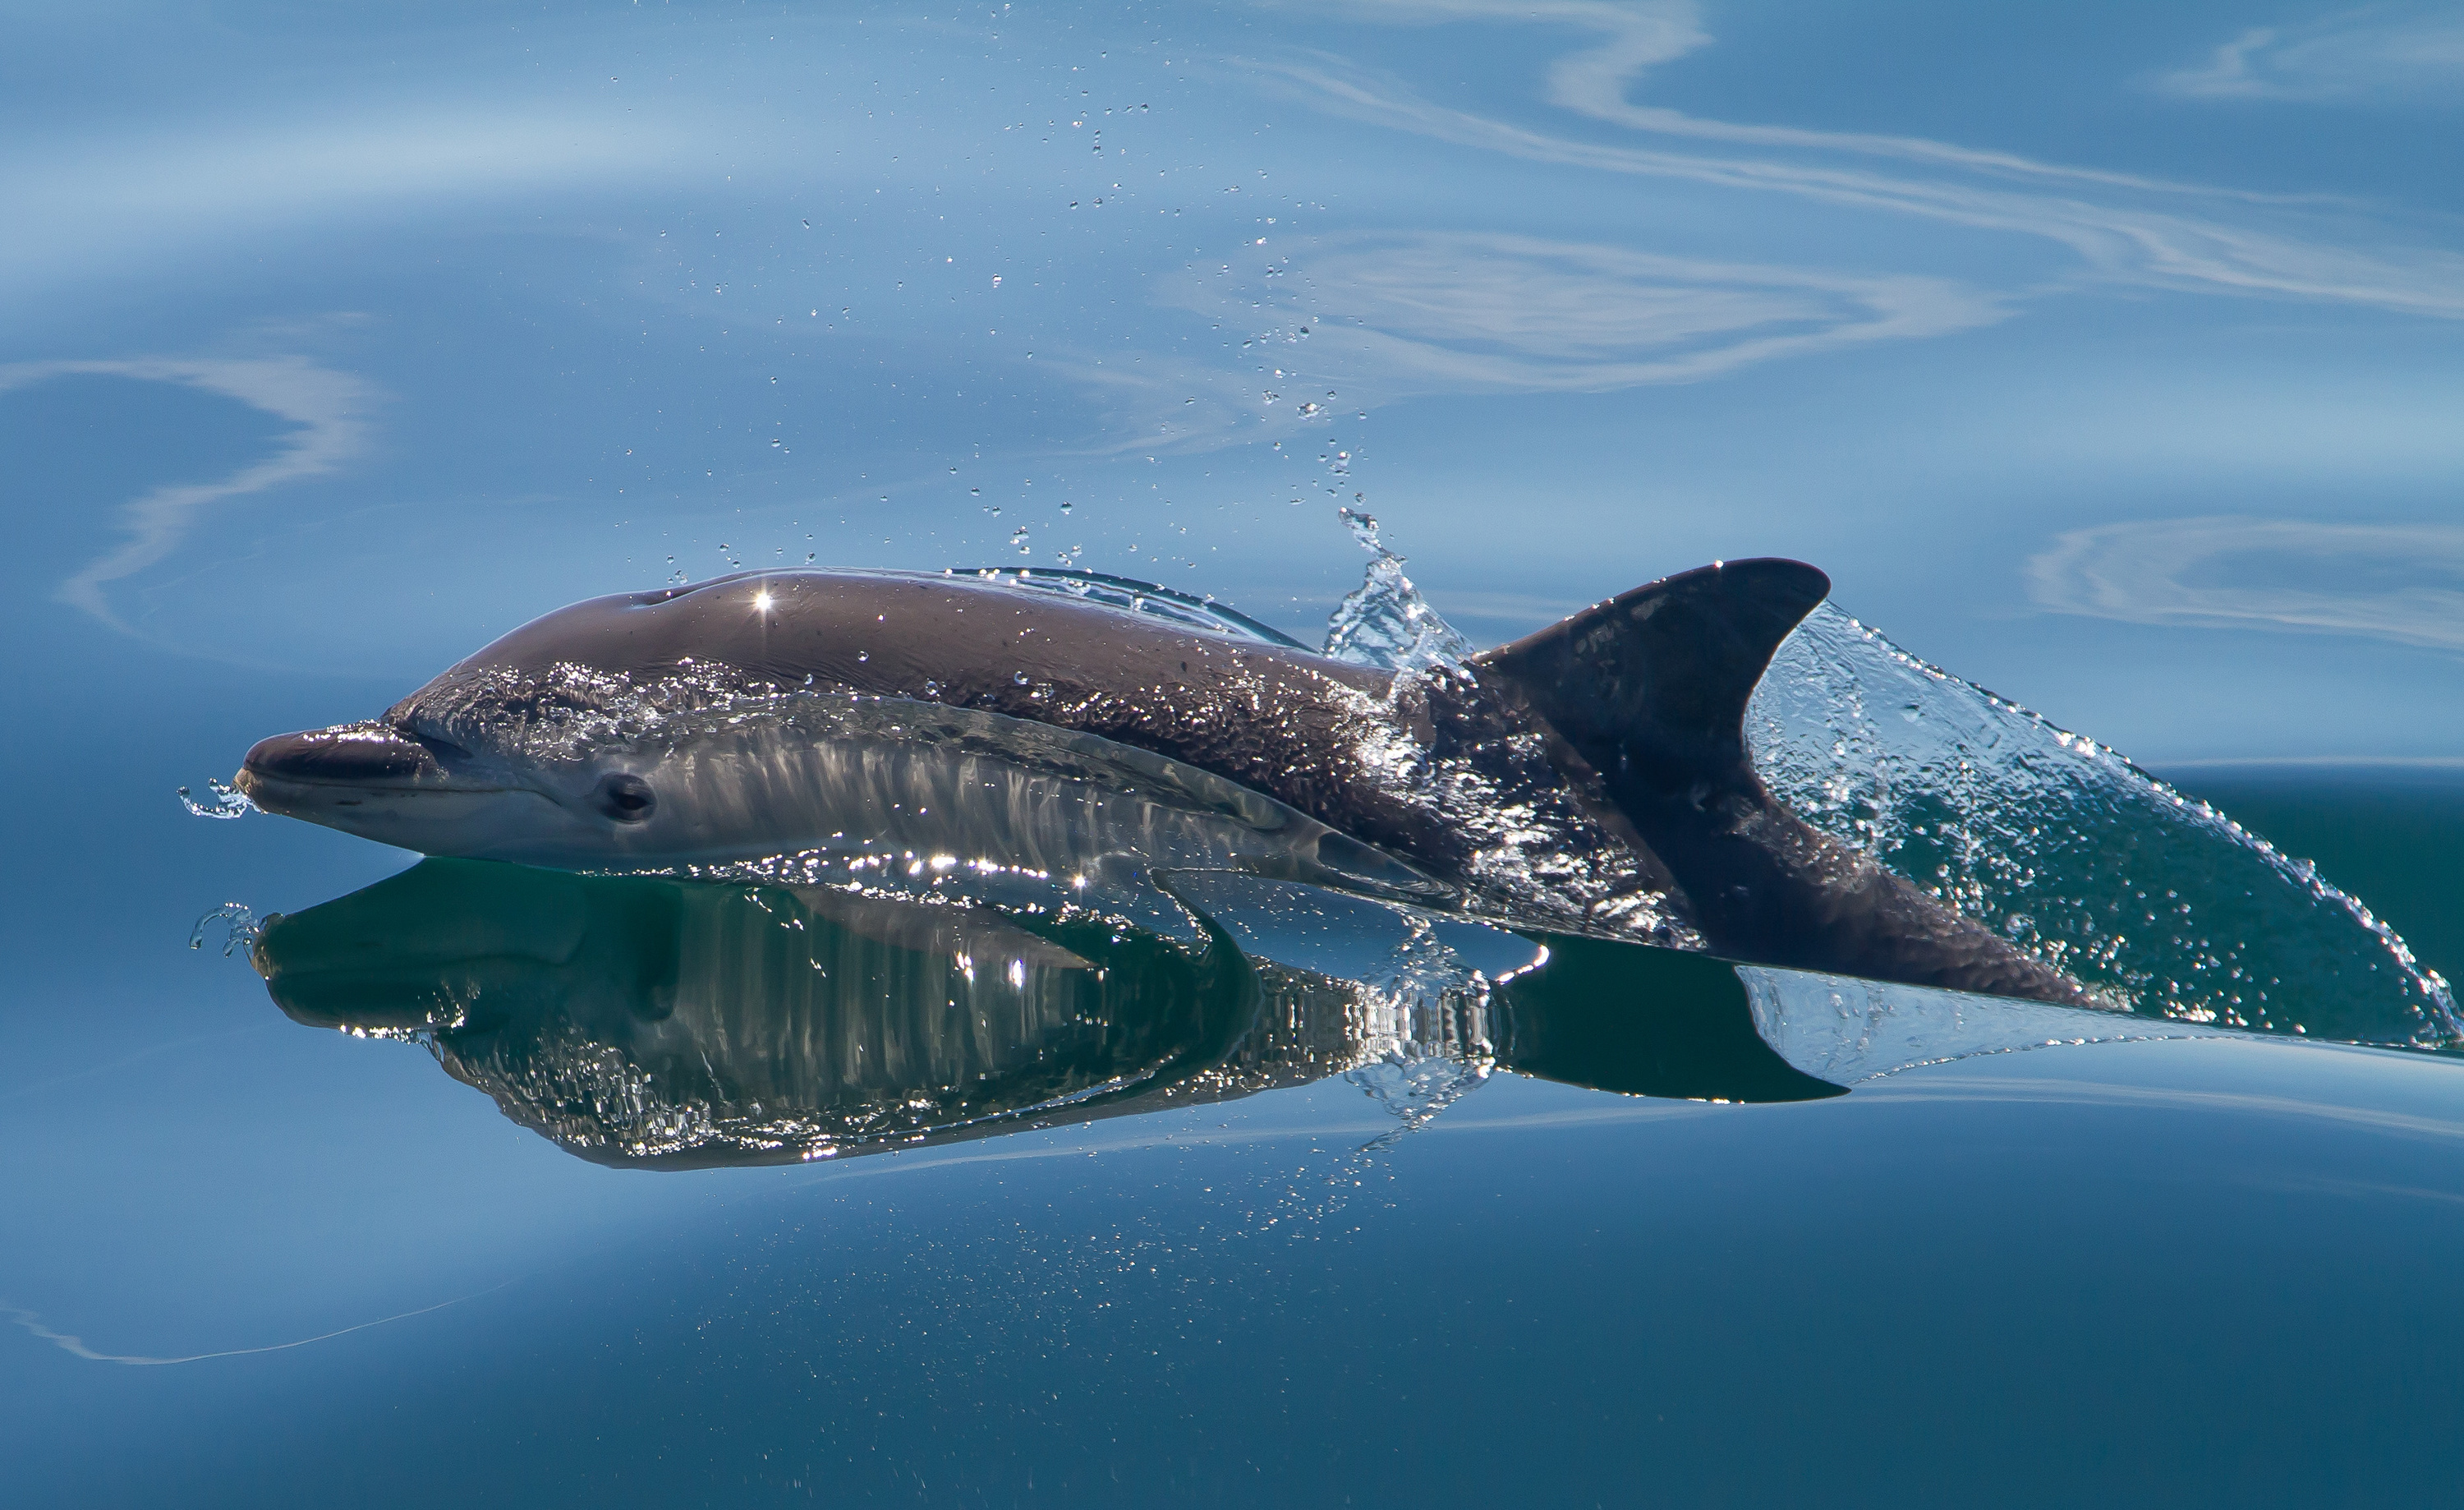 Скачать обои бесплатно Животные, Море, Дельфин картинка на рабочий стол ПК